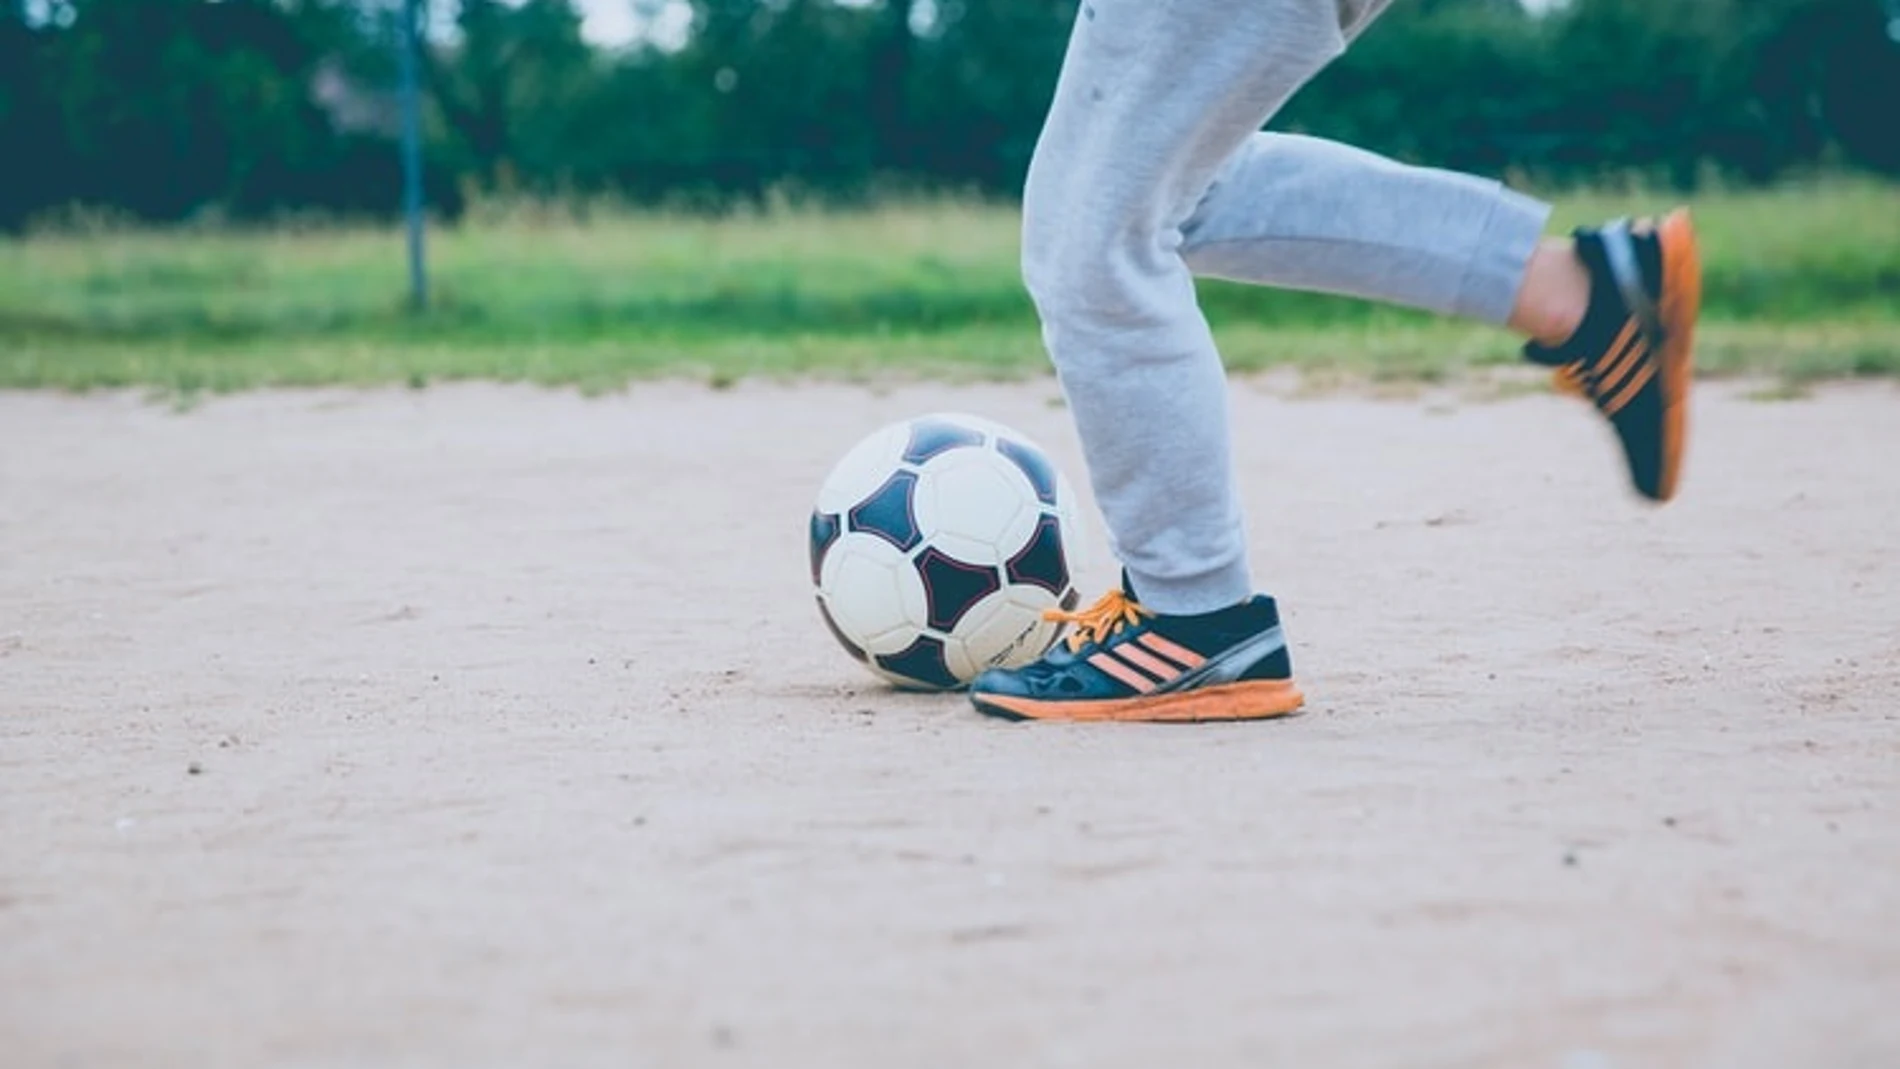 Podólogos advierten de que algunas prácticas deportivas pueden poner en riesgo los pies y la salud de los niños